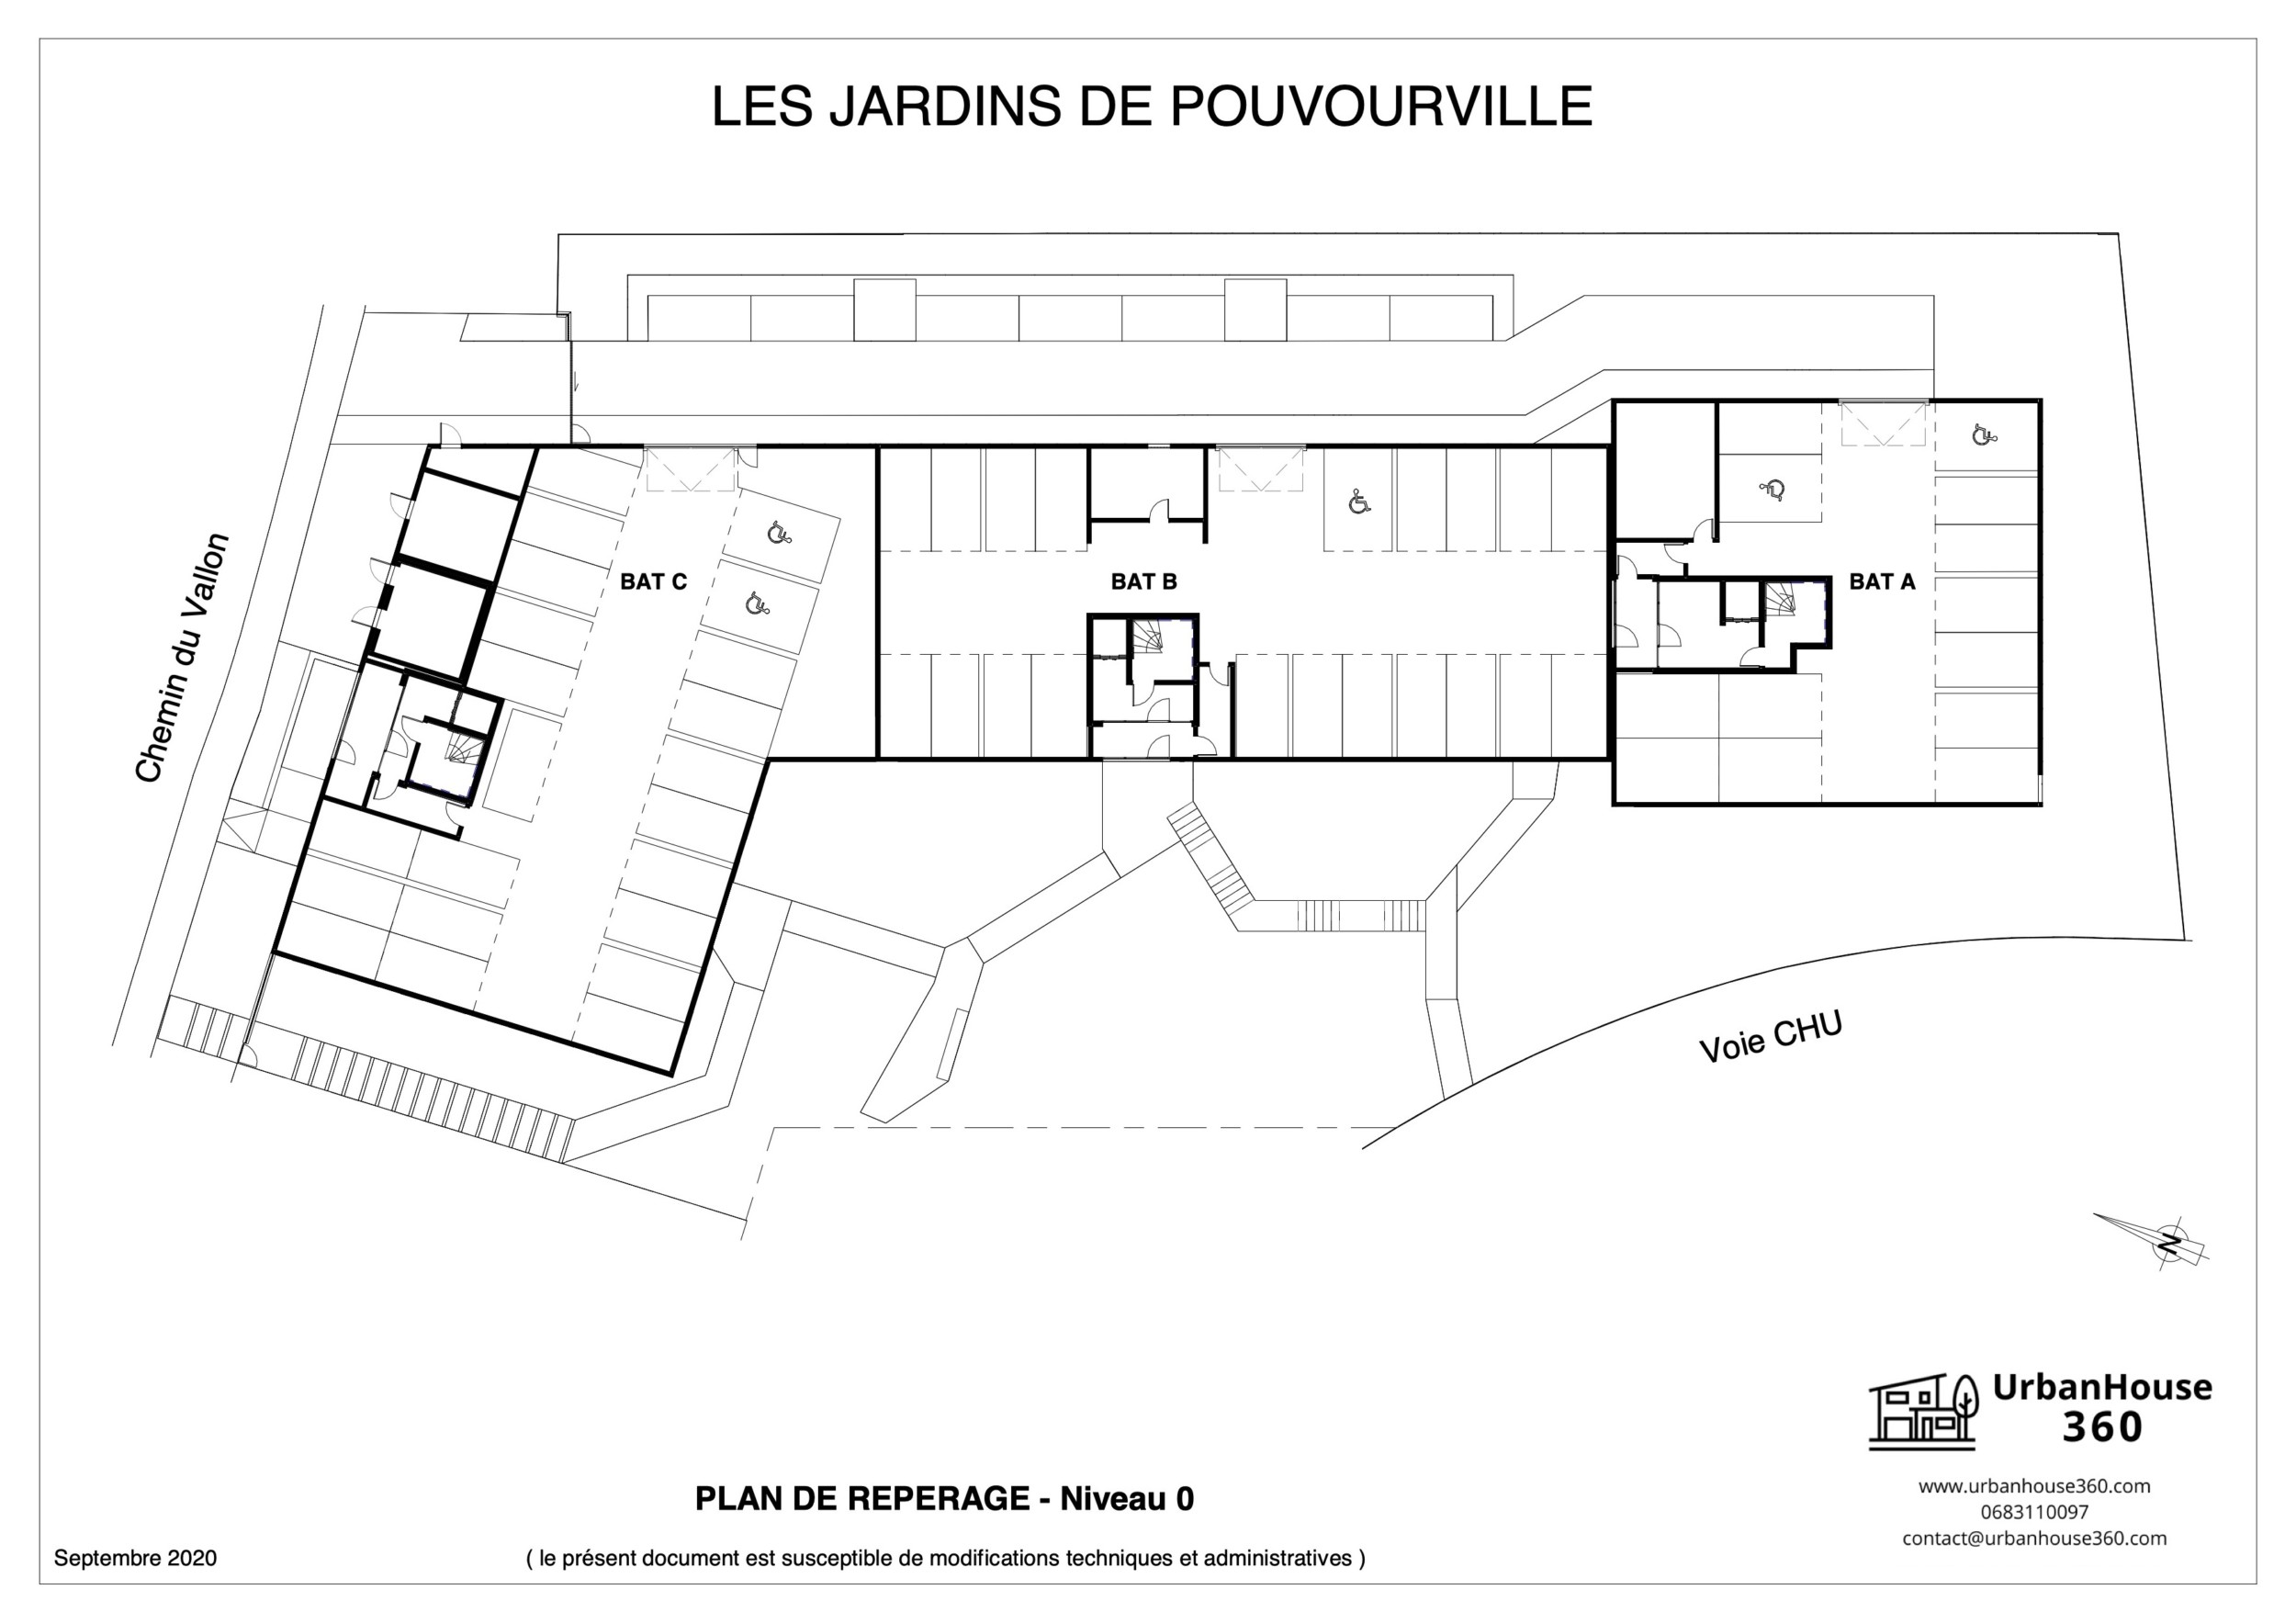 UrbanHouse360-plans_de_reperage-les_jardins_de_pouvourville